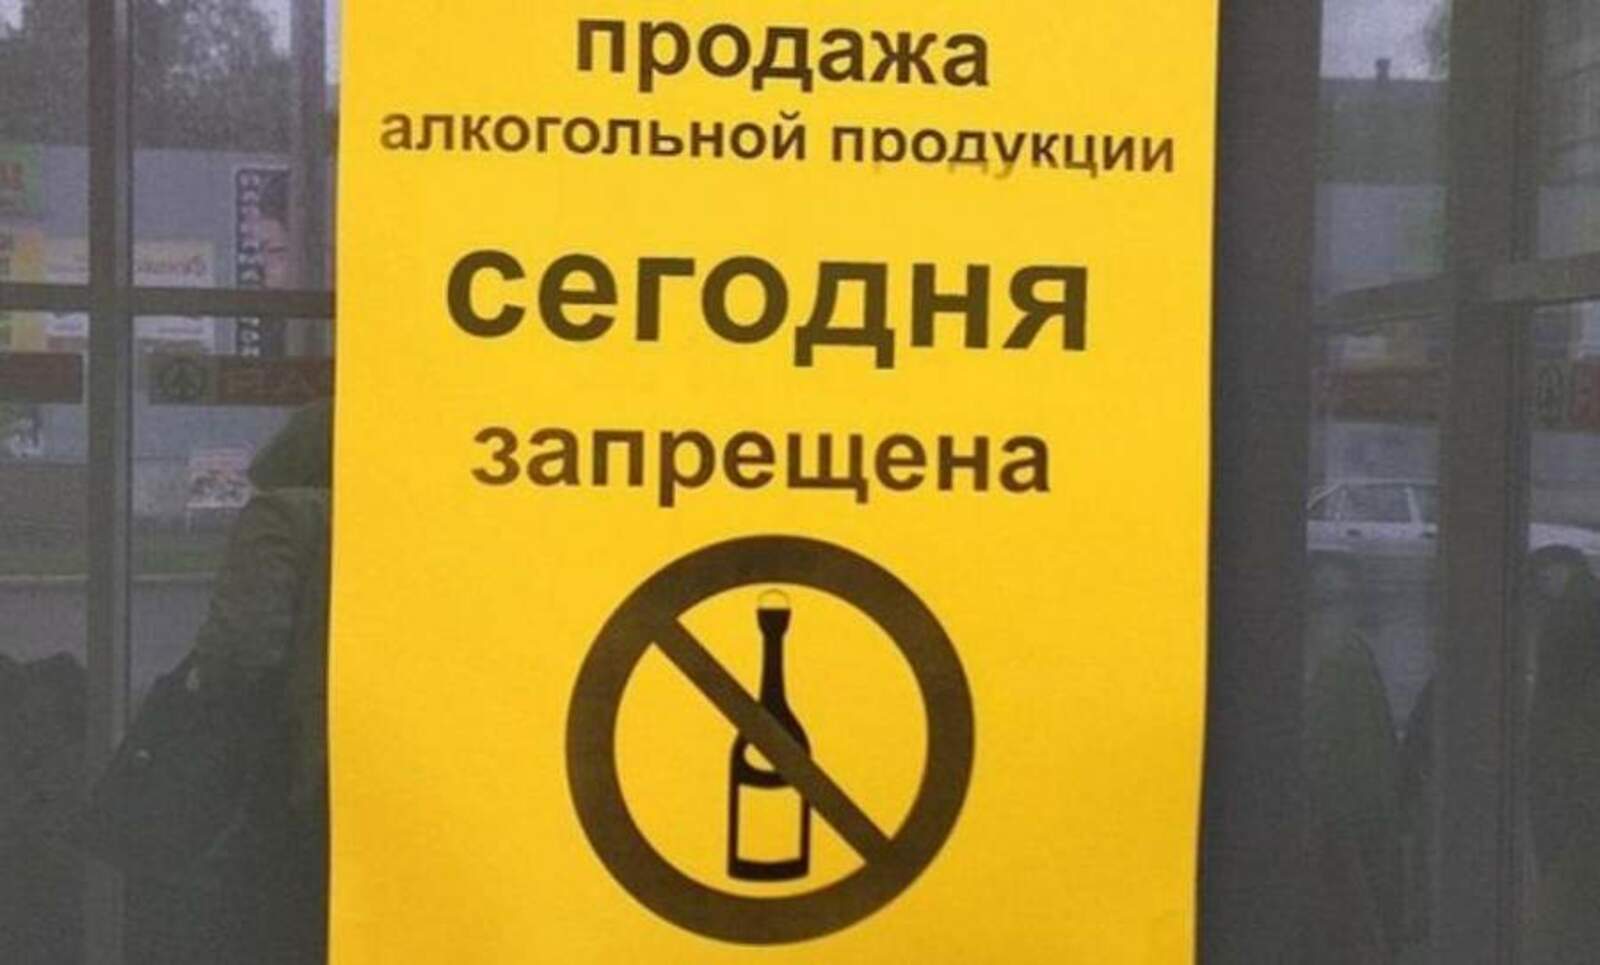 Запретят 1 июня. Продажа алкогольной продукции запрещена. Объявление о запрете торговли алкоголем. Алкогольная продукция запрещ. Продажа запрещена.